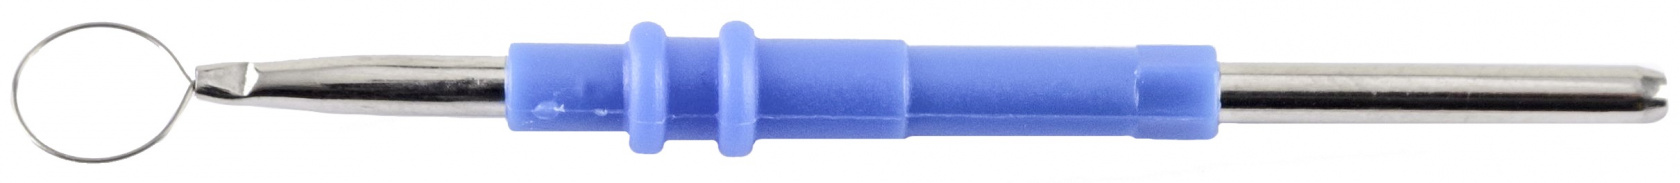 Electrisure Biopsy Loop 5.5cm Teflon non-stick Sterile 6mm